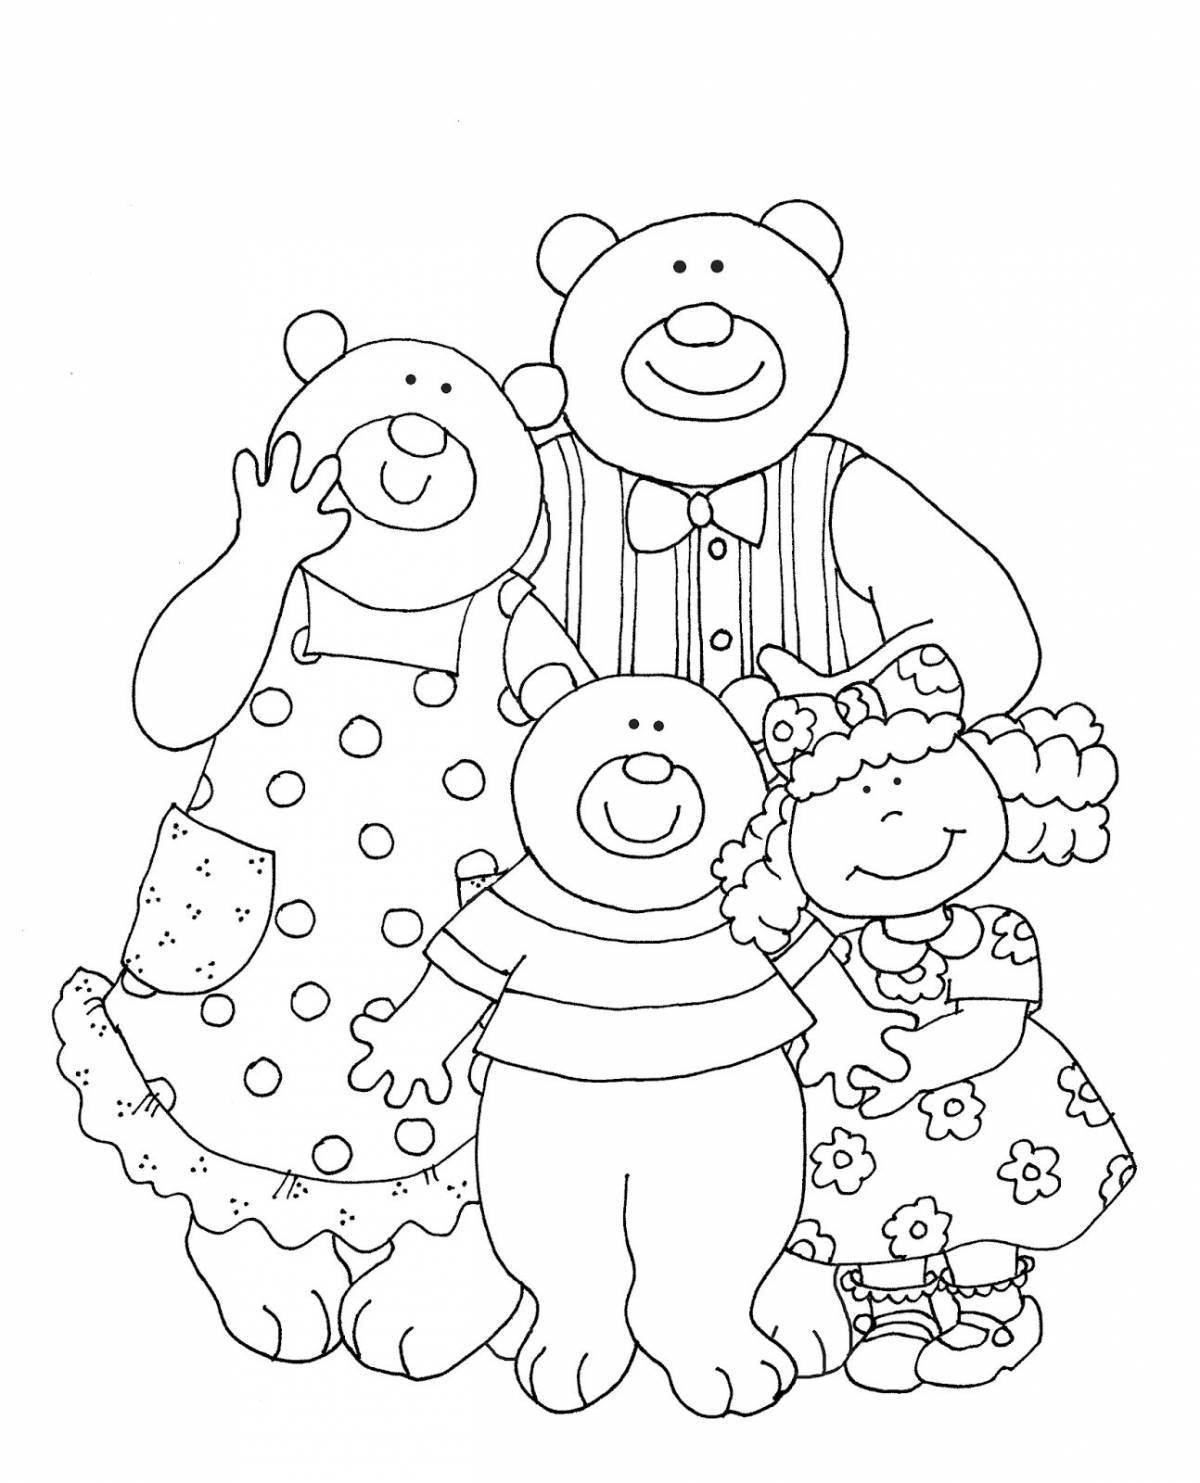 Приглашение трех медведей раскраска для дошкольников